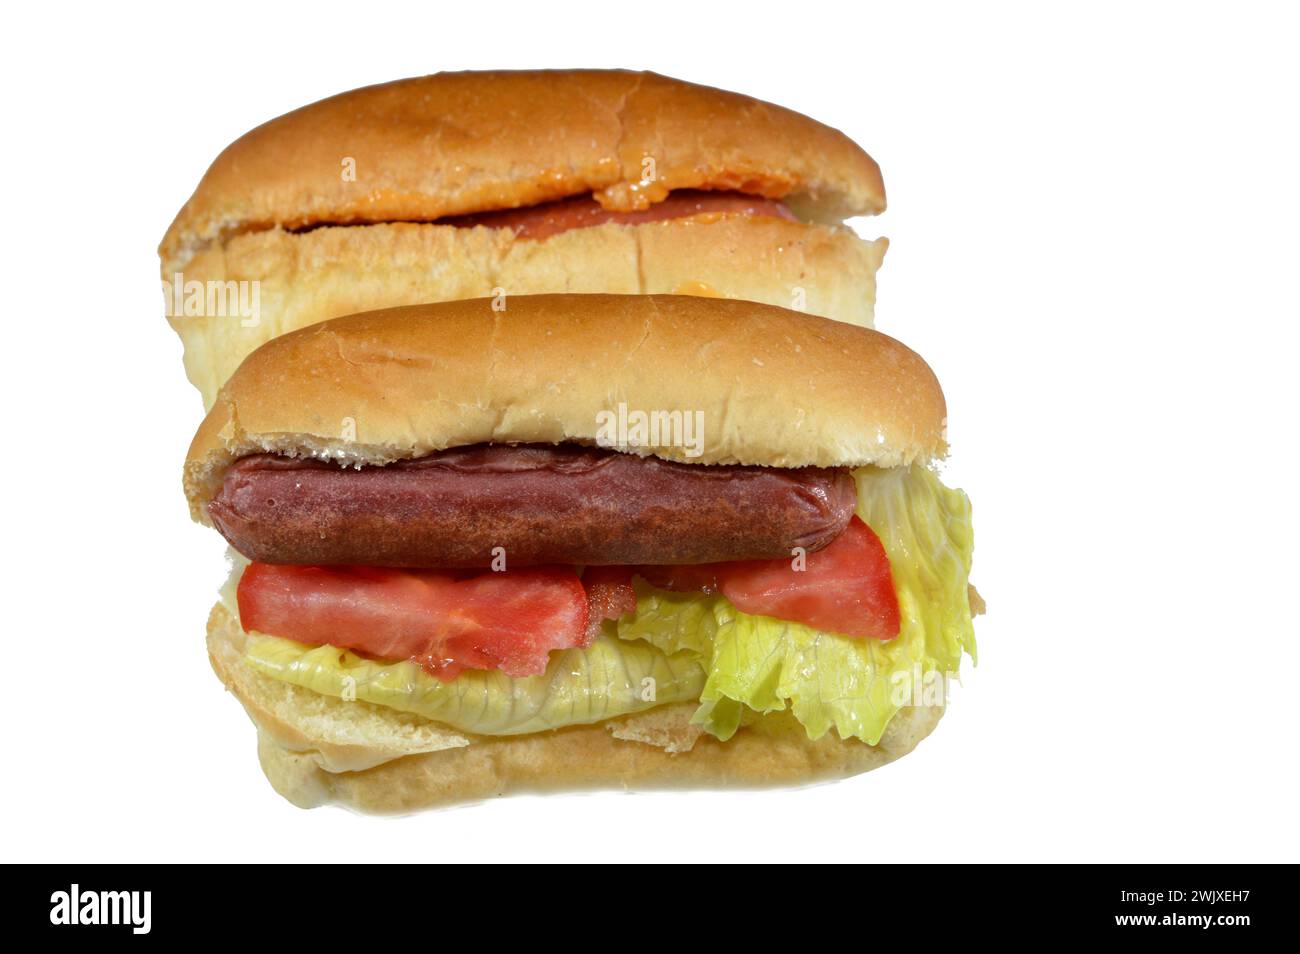 Hot Dog in Brötchen mit Tausend Insel Dressing Sauce aus Ketchup Mayonnaise, gegrillter Rindfleischwurst, Tomate, Salat, genannt wiener (Wiener Wurst) und f Stockfoto